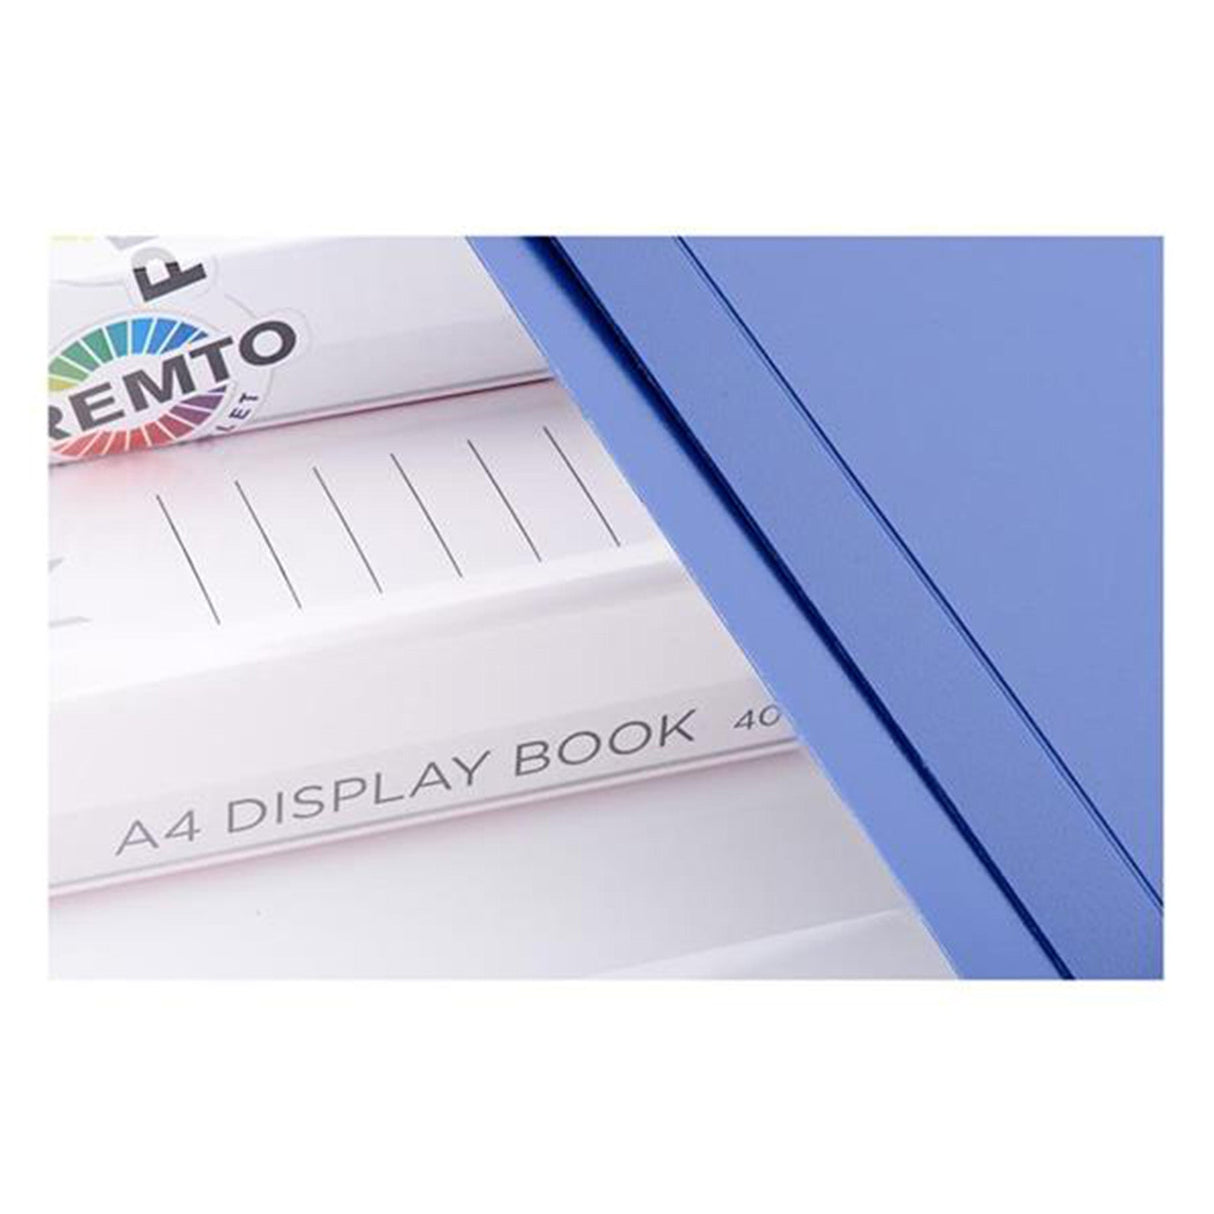 Premto A4 40 Pocket Display Book - Admiral Blue | Stationery Shop UK